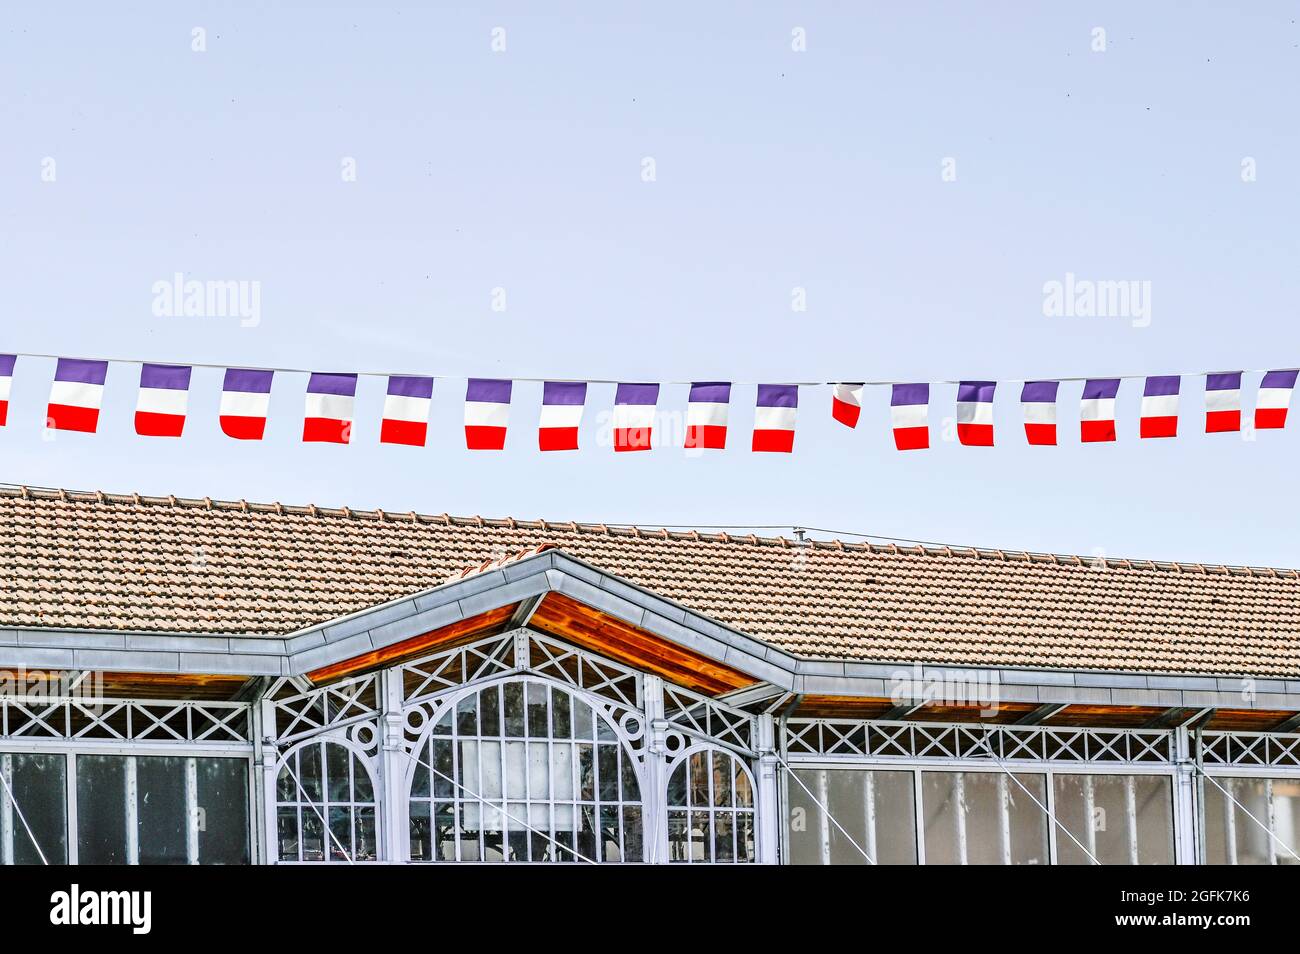 Französische Flaggen winken im Wind über dem Dach der Markthalle von Saint-Cyprien anlässlich des französischen Nationalfeiertags, dem 14. Juli. Stockfoto